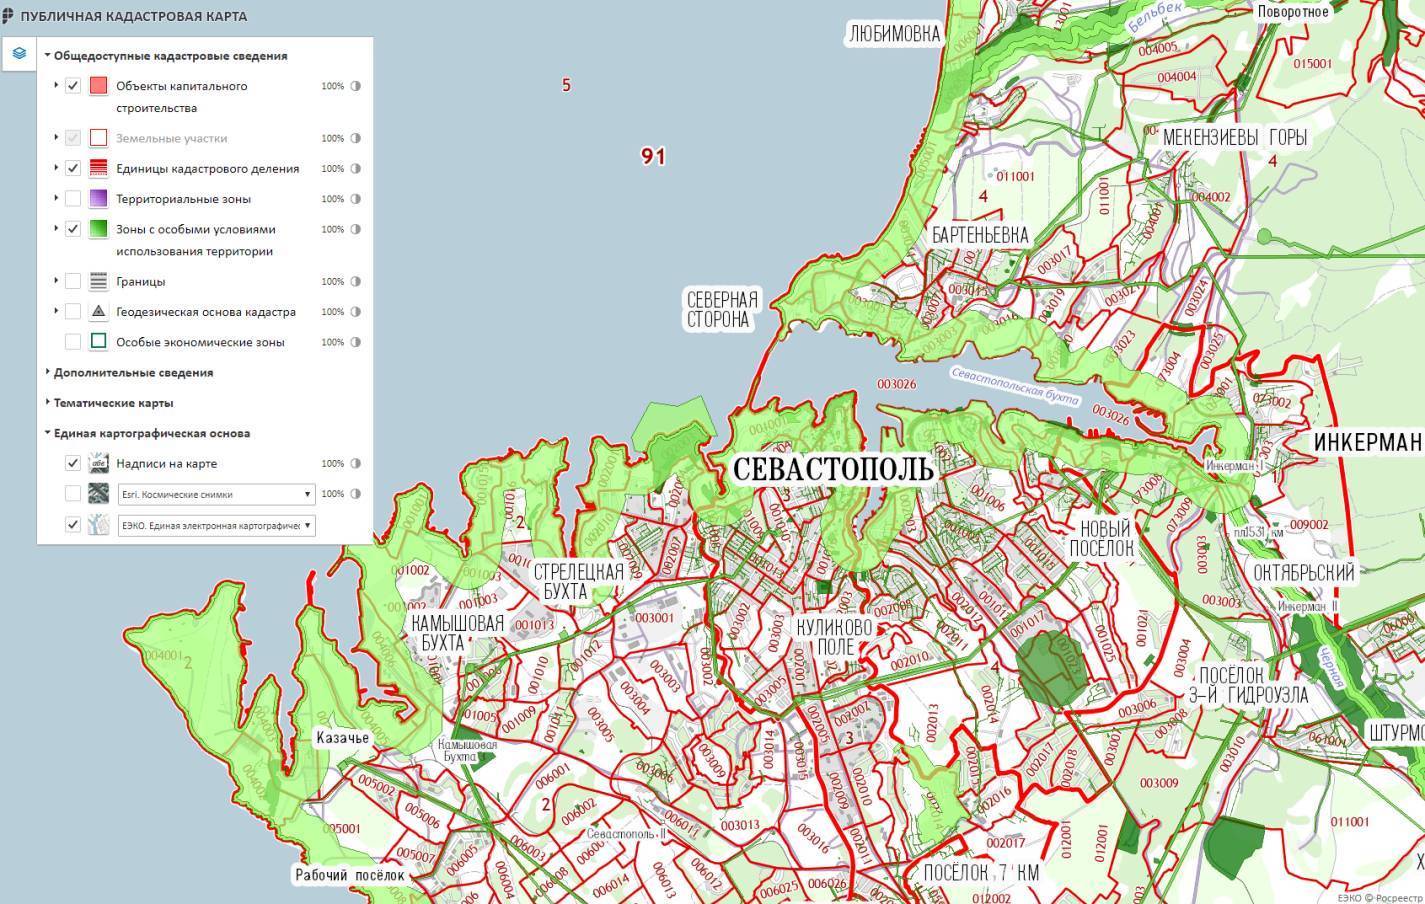 Публичная кадастровая карта: как найти участок или свободную землю